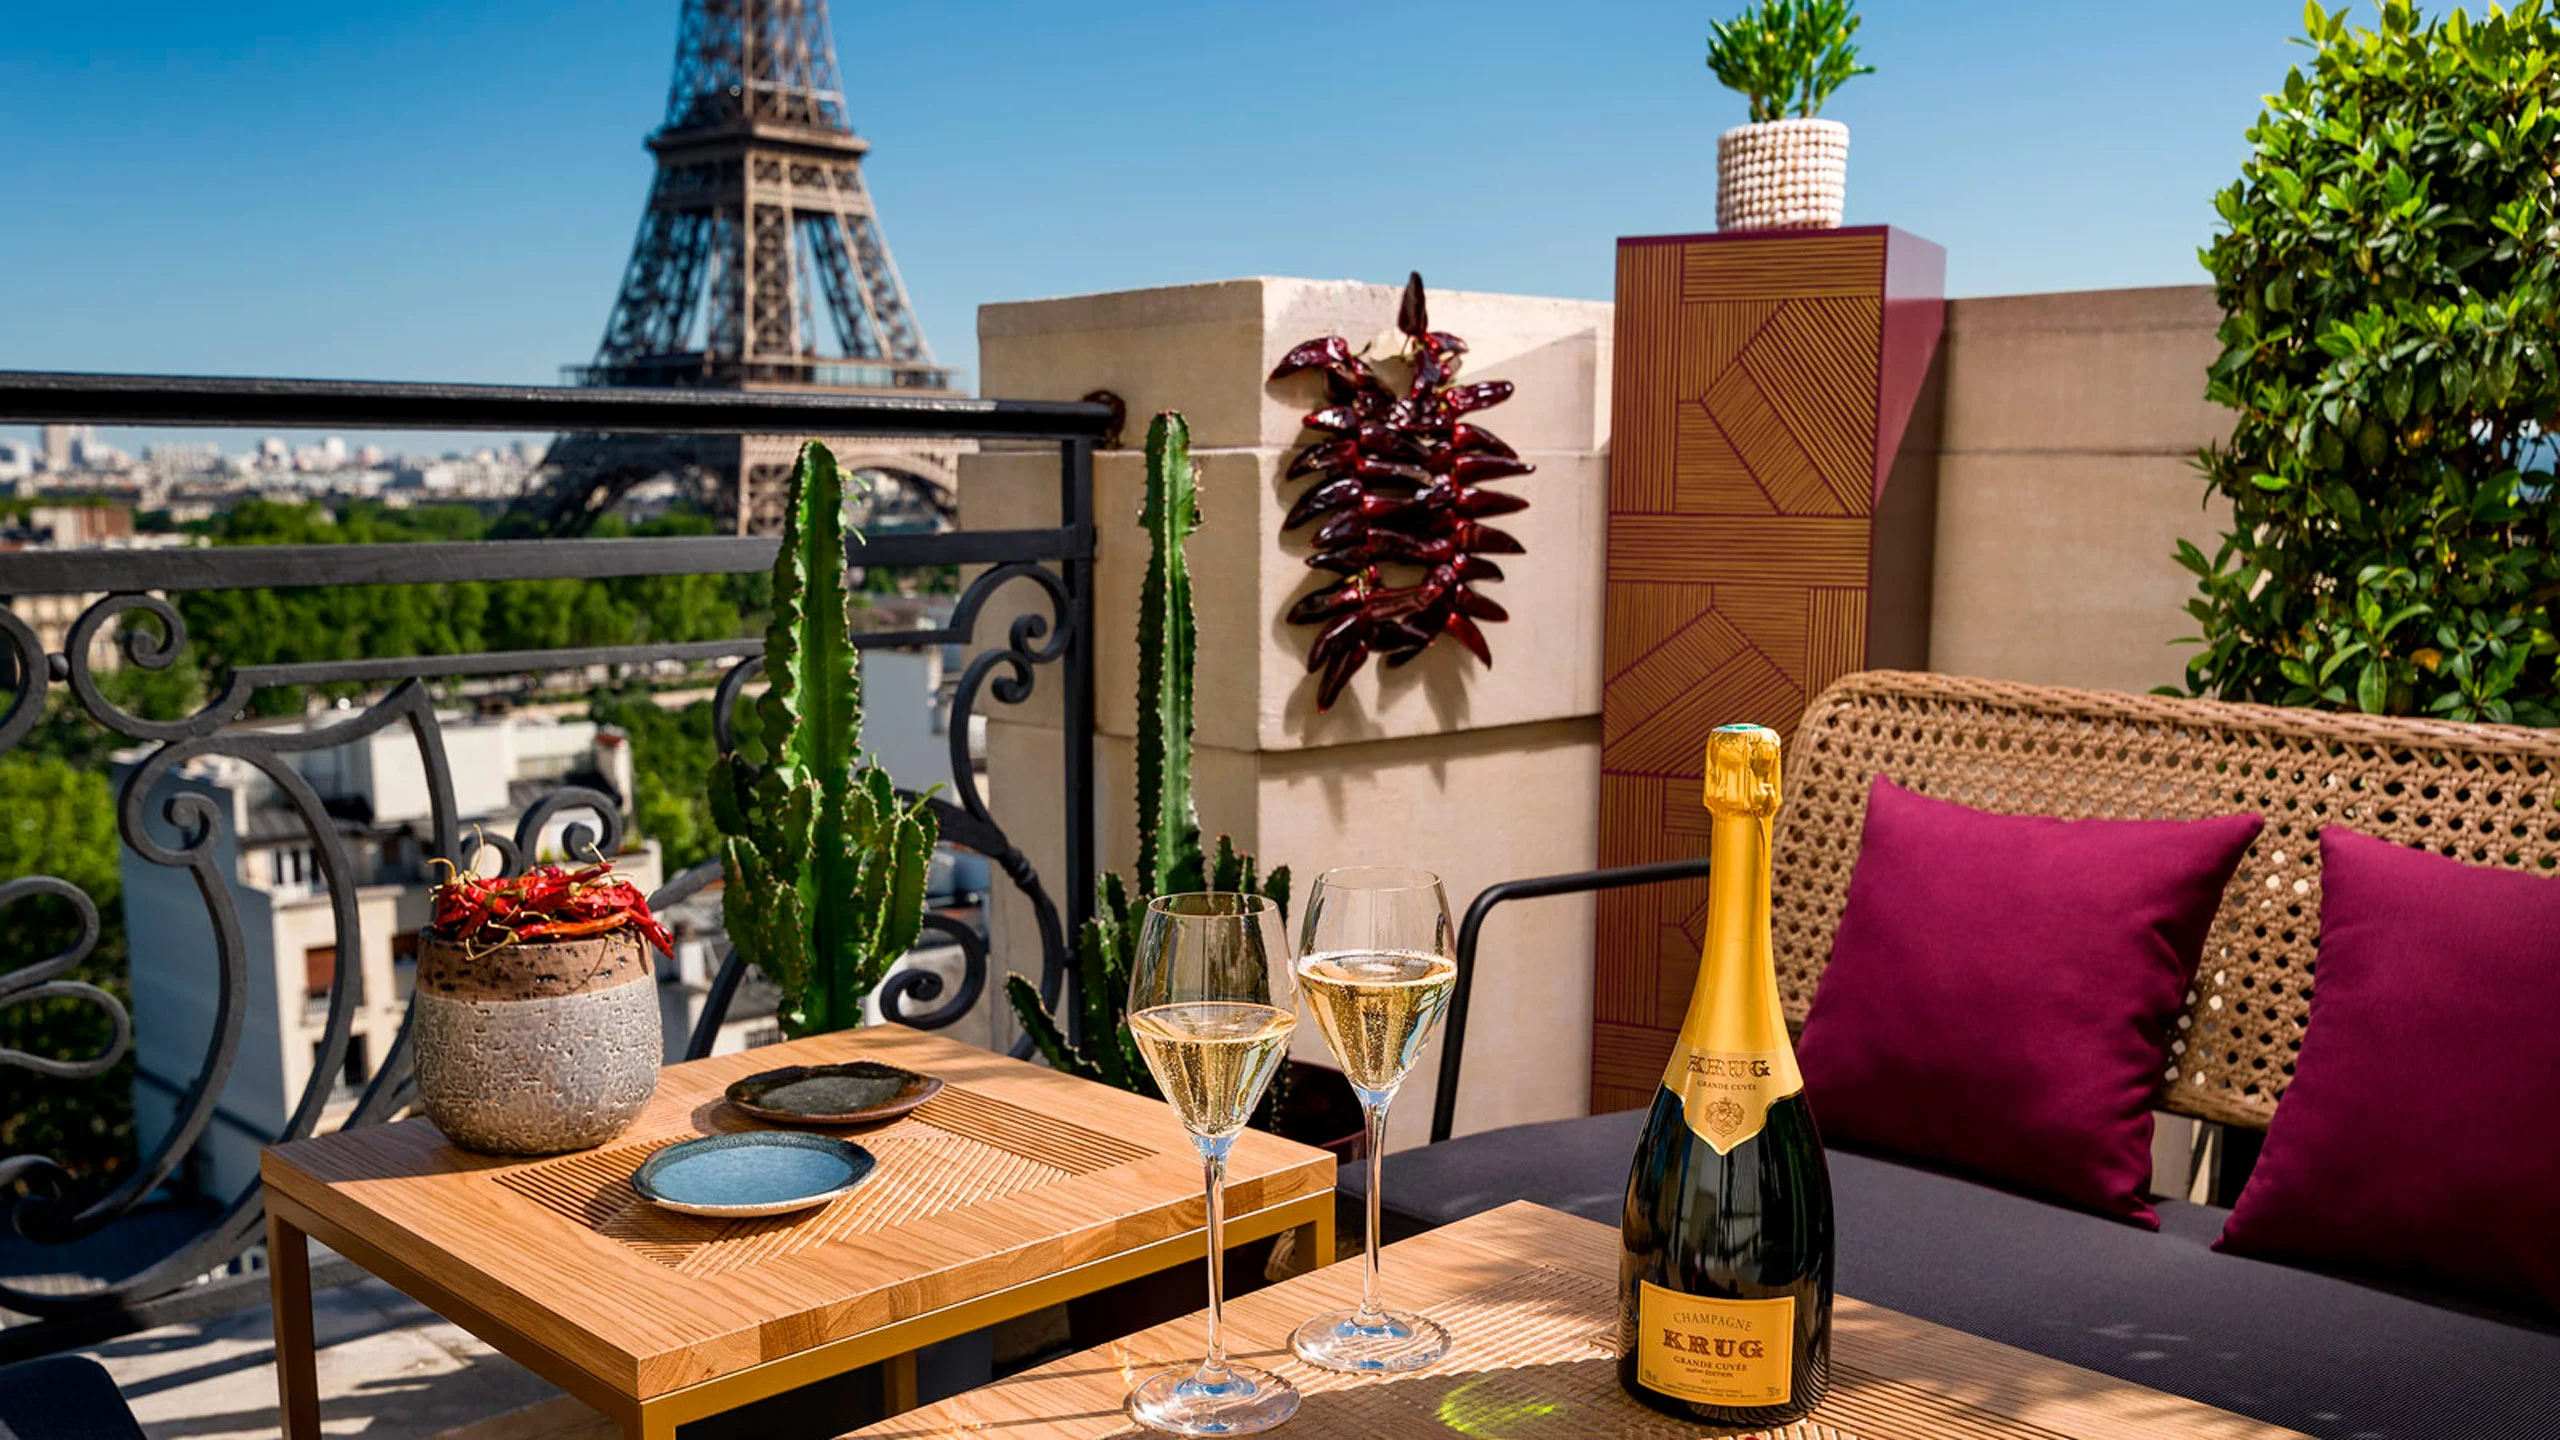 Champaña con vista a la Torre Eiffel en este pop-up veraniego